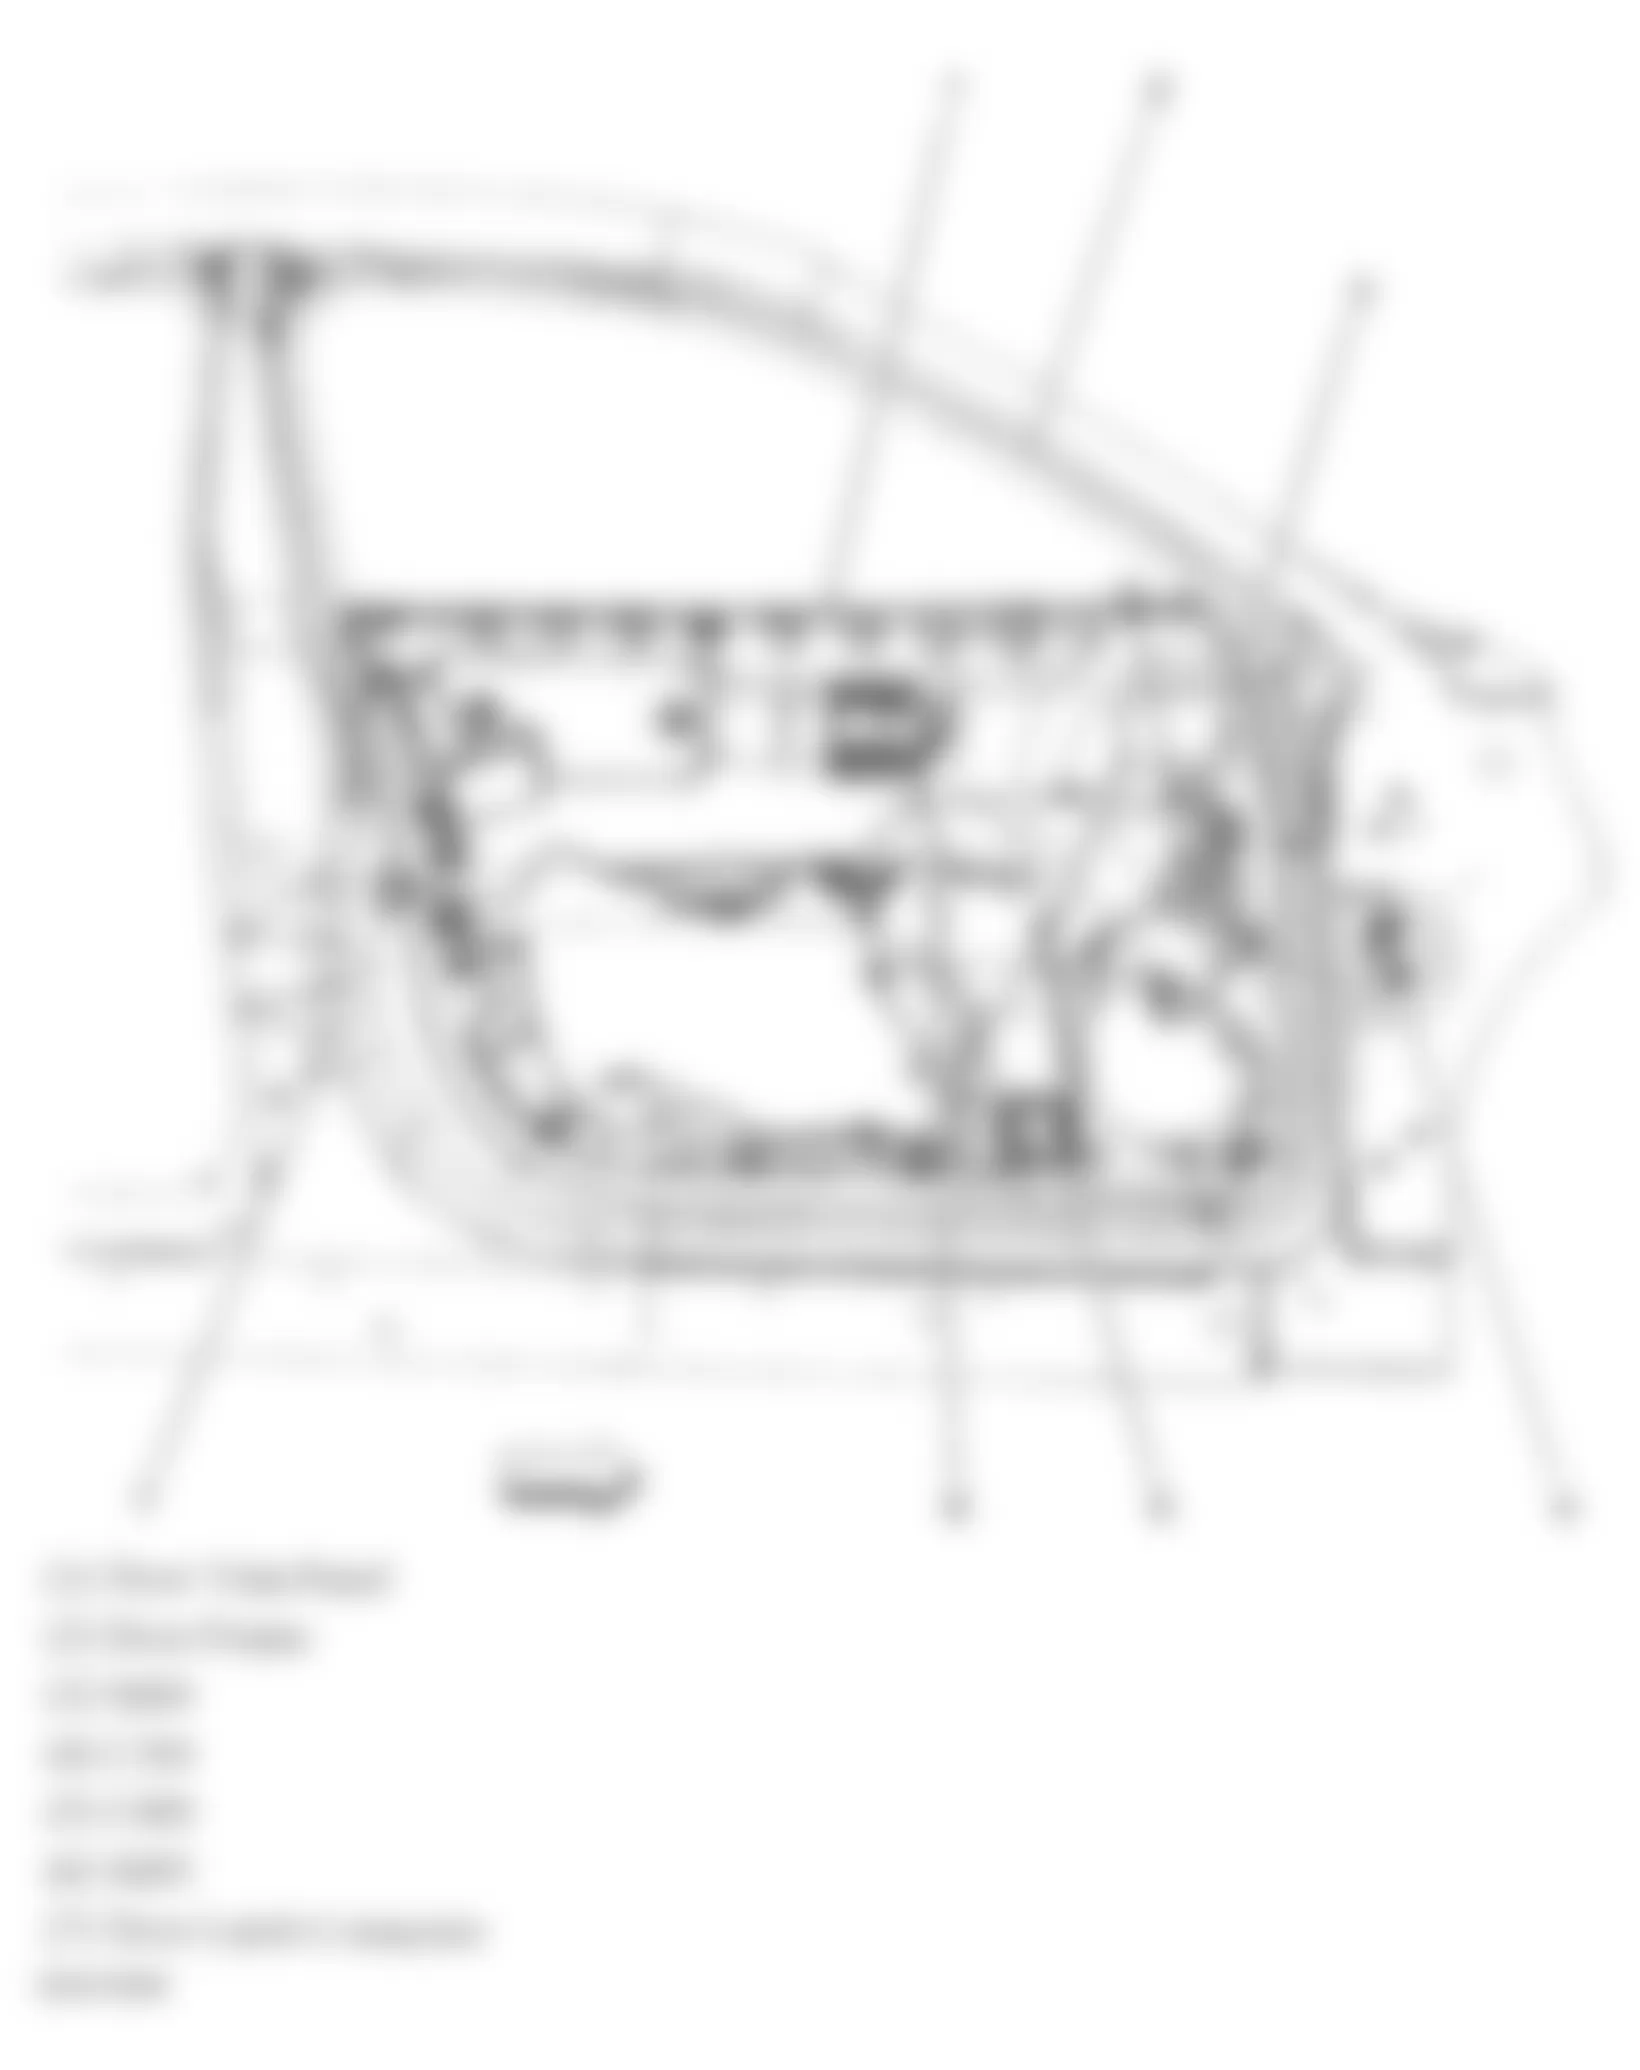 Buick Allure CXL 2006 - Component Locations -  Front Passengers Door